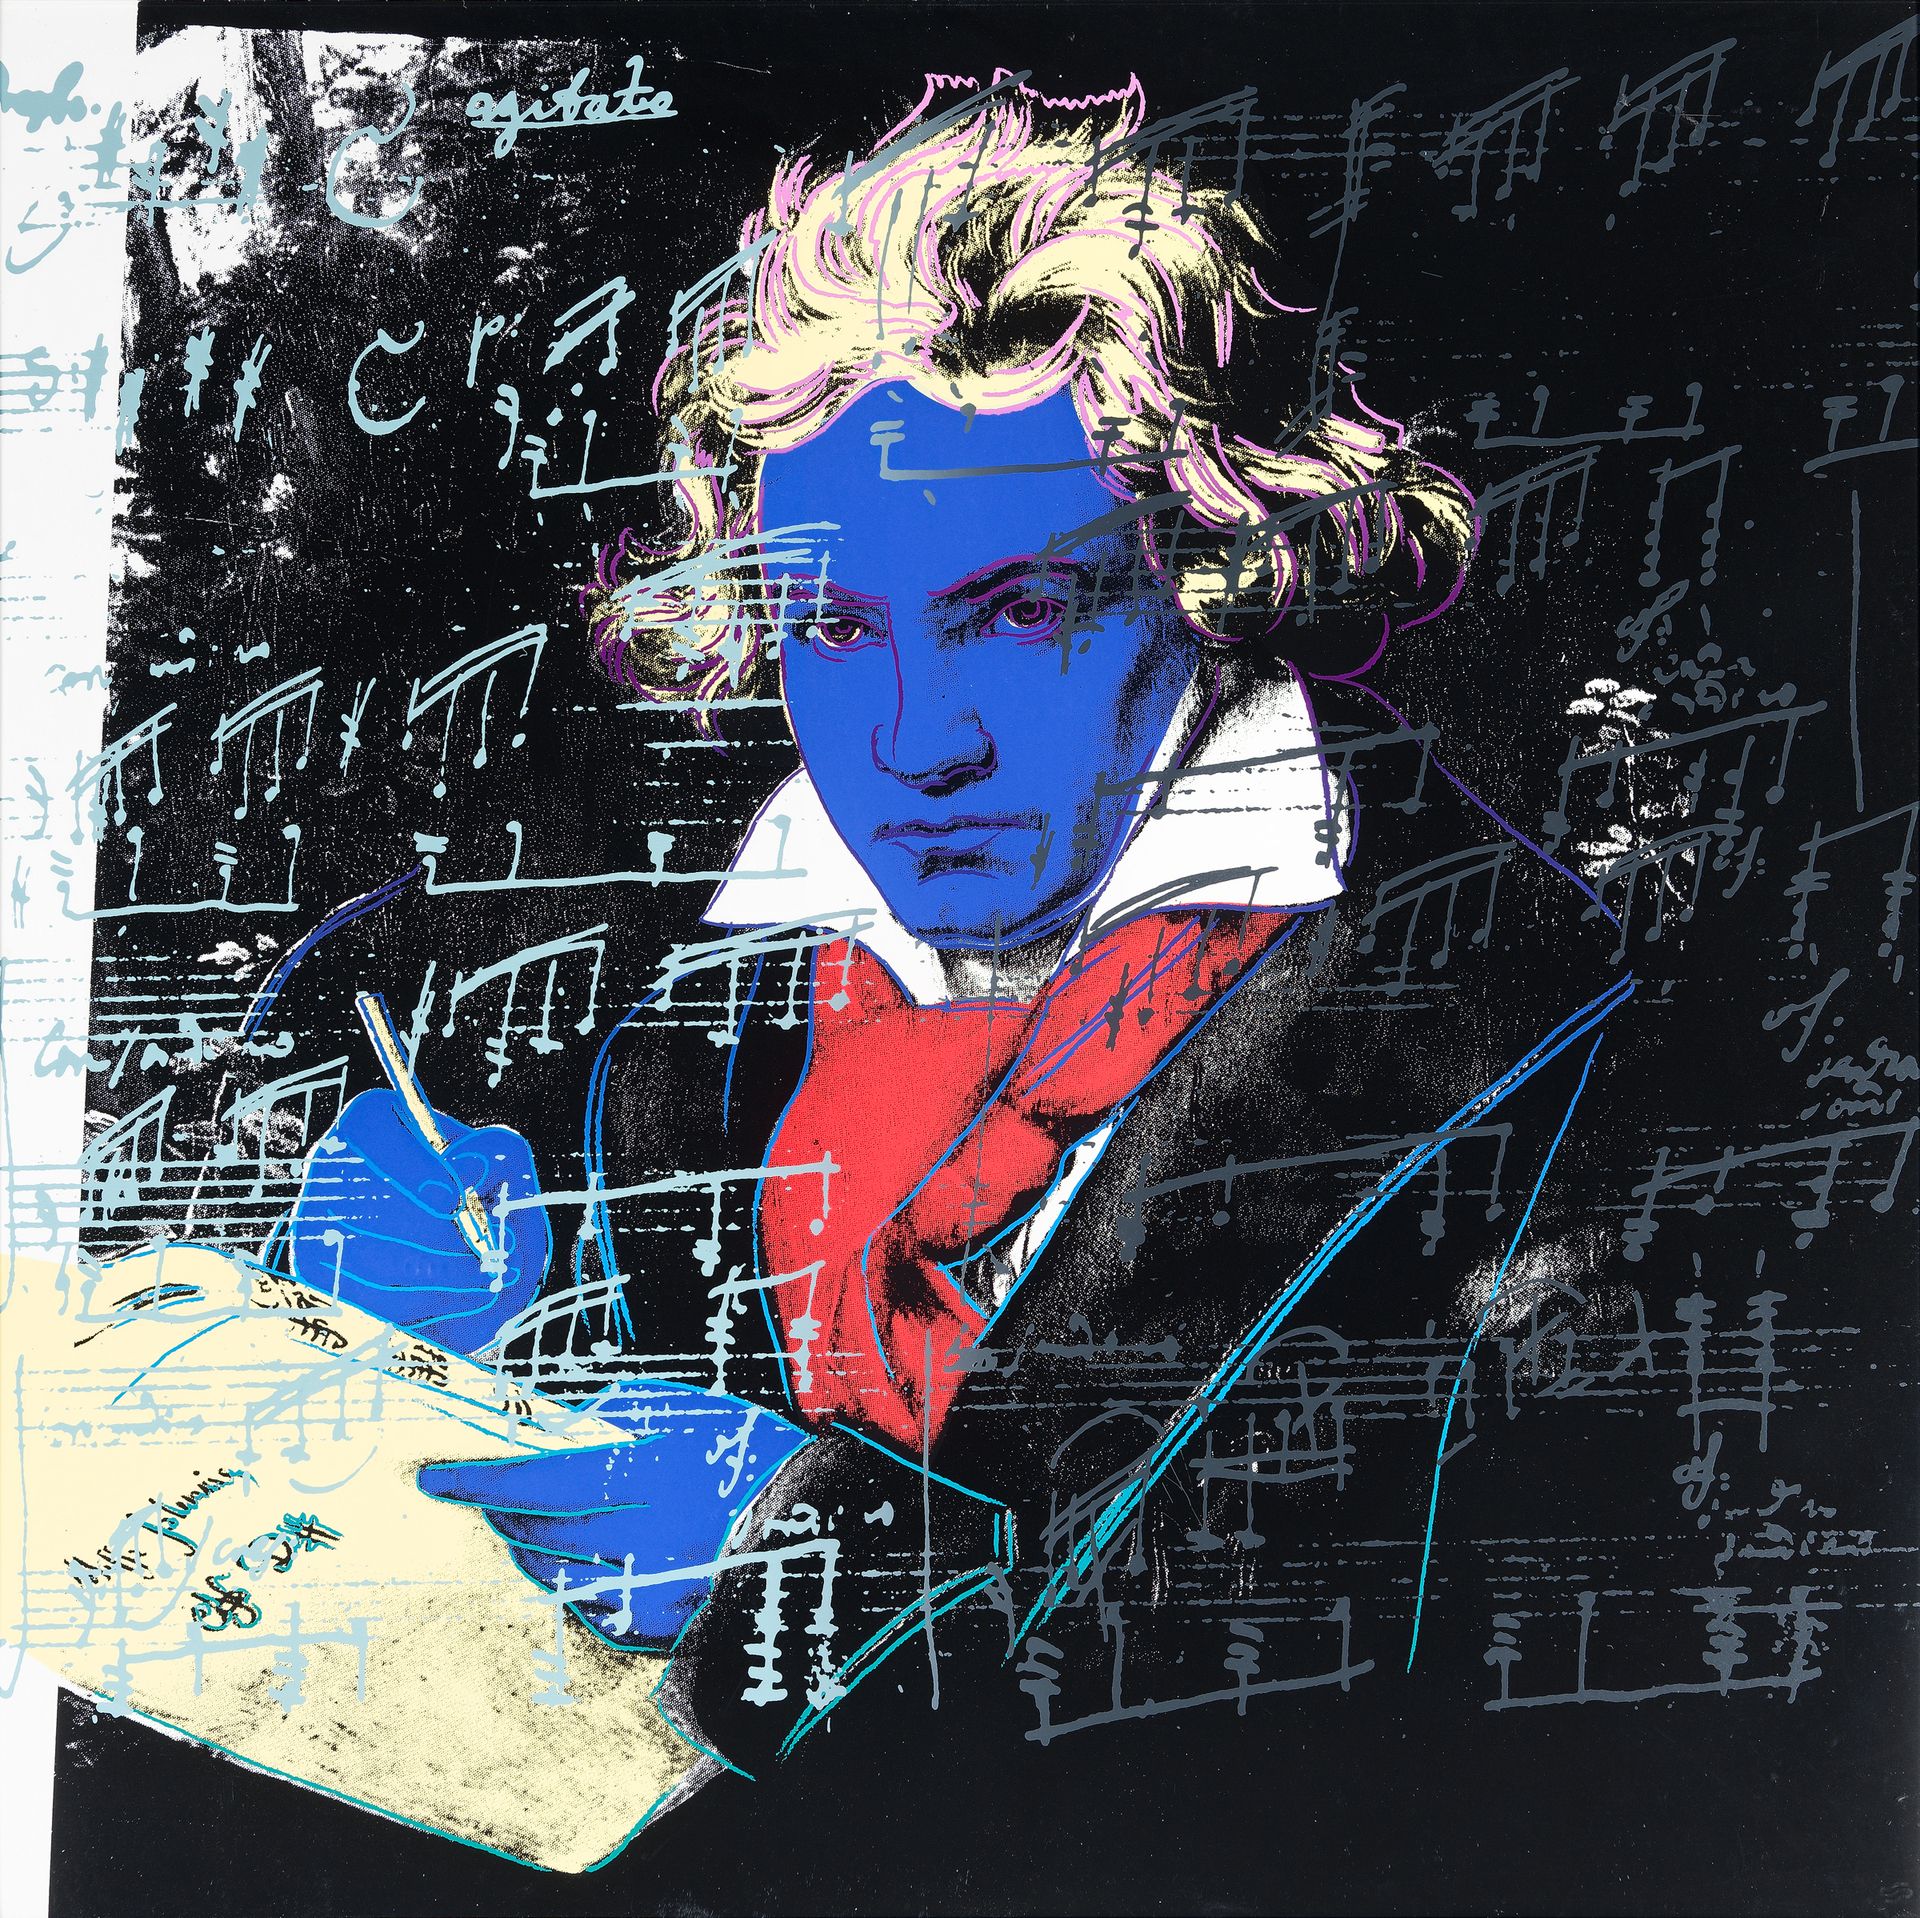 Null 安迪-沃霍尔(1928-1987)

贝多芬。 1987年

彩色丝印

背面有铅笔签名的是

- 印刷大师，鲁珀特-贾森-史密斯

- 出版商，赫尔&hellip;